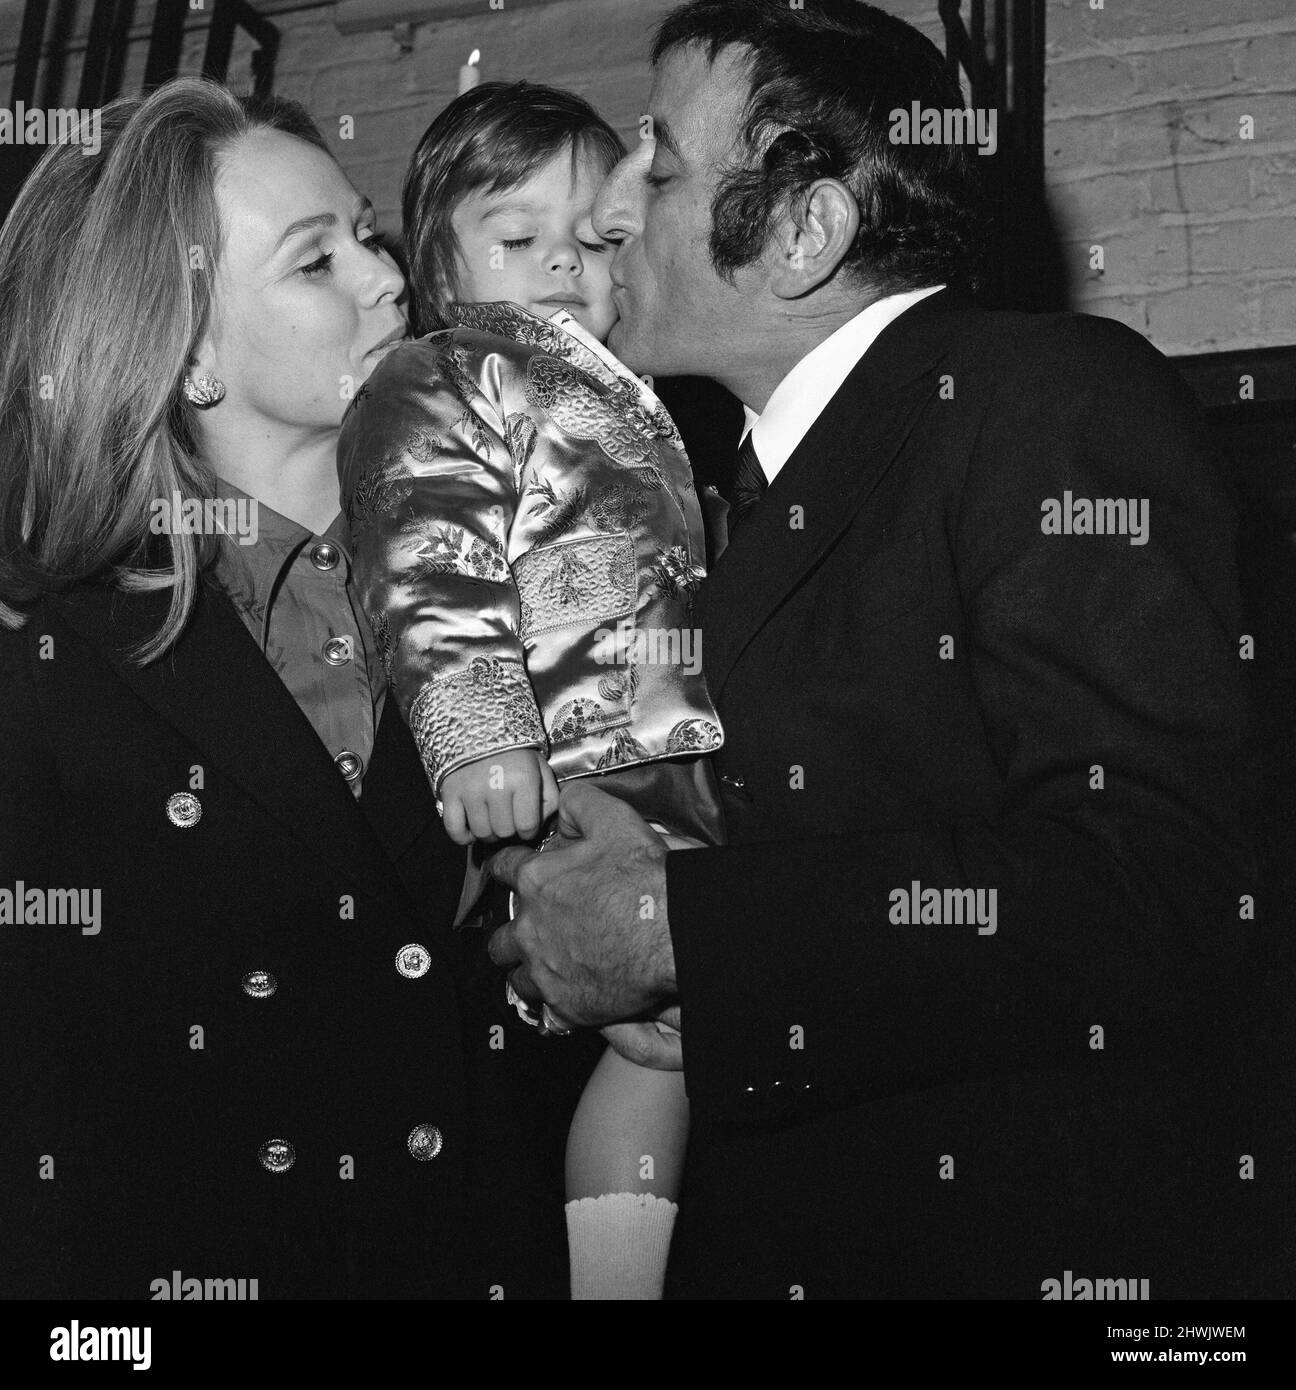 Le chanteur américain Tony Bennett à Londres avec sa femme Sandra et leur fille de 22 mois Joanna. Lors d'une conférence de presse à Londres aujourd'hui, Bennett a révélé qu'il s'était marié secrètement à New York mercredi dernier avant de venir à Londres pour enregistrer une série télévisée. 4th janvier 1972. Banque D'Images